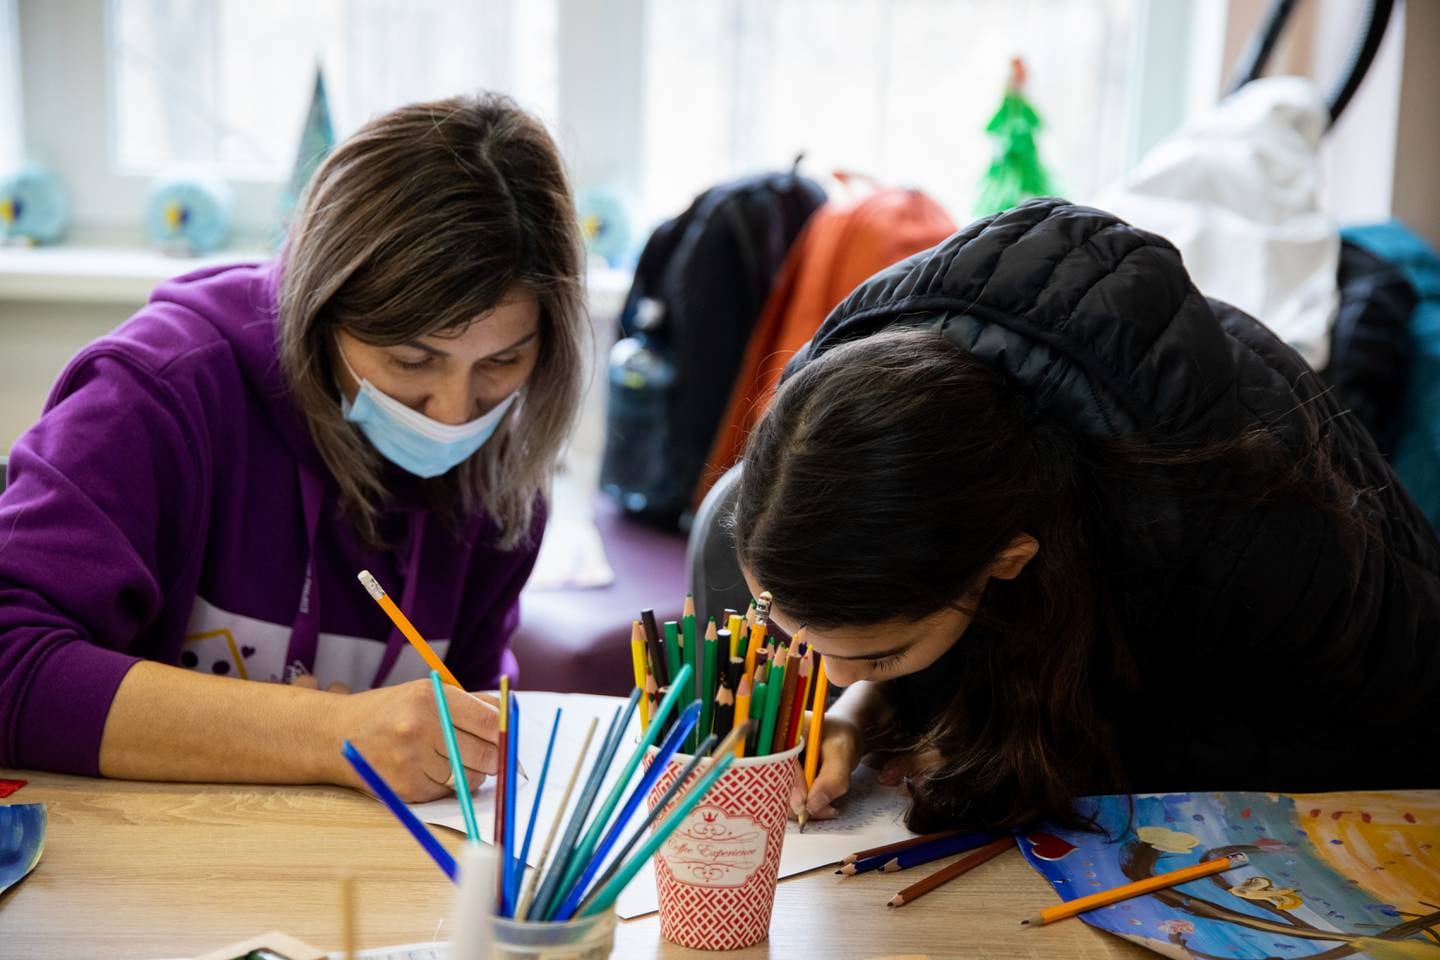 På egne samlingsrom, opprettet på flyktningmottak av Plan Norge, kan barn og unge være kreative og gjøre lekser og andre aktiviteter. – Her vi personale som er trent til å ta imot dem, og hjelpe, sier Partpuoli, generalsekretær i Plan Norge.